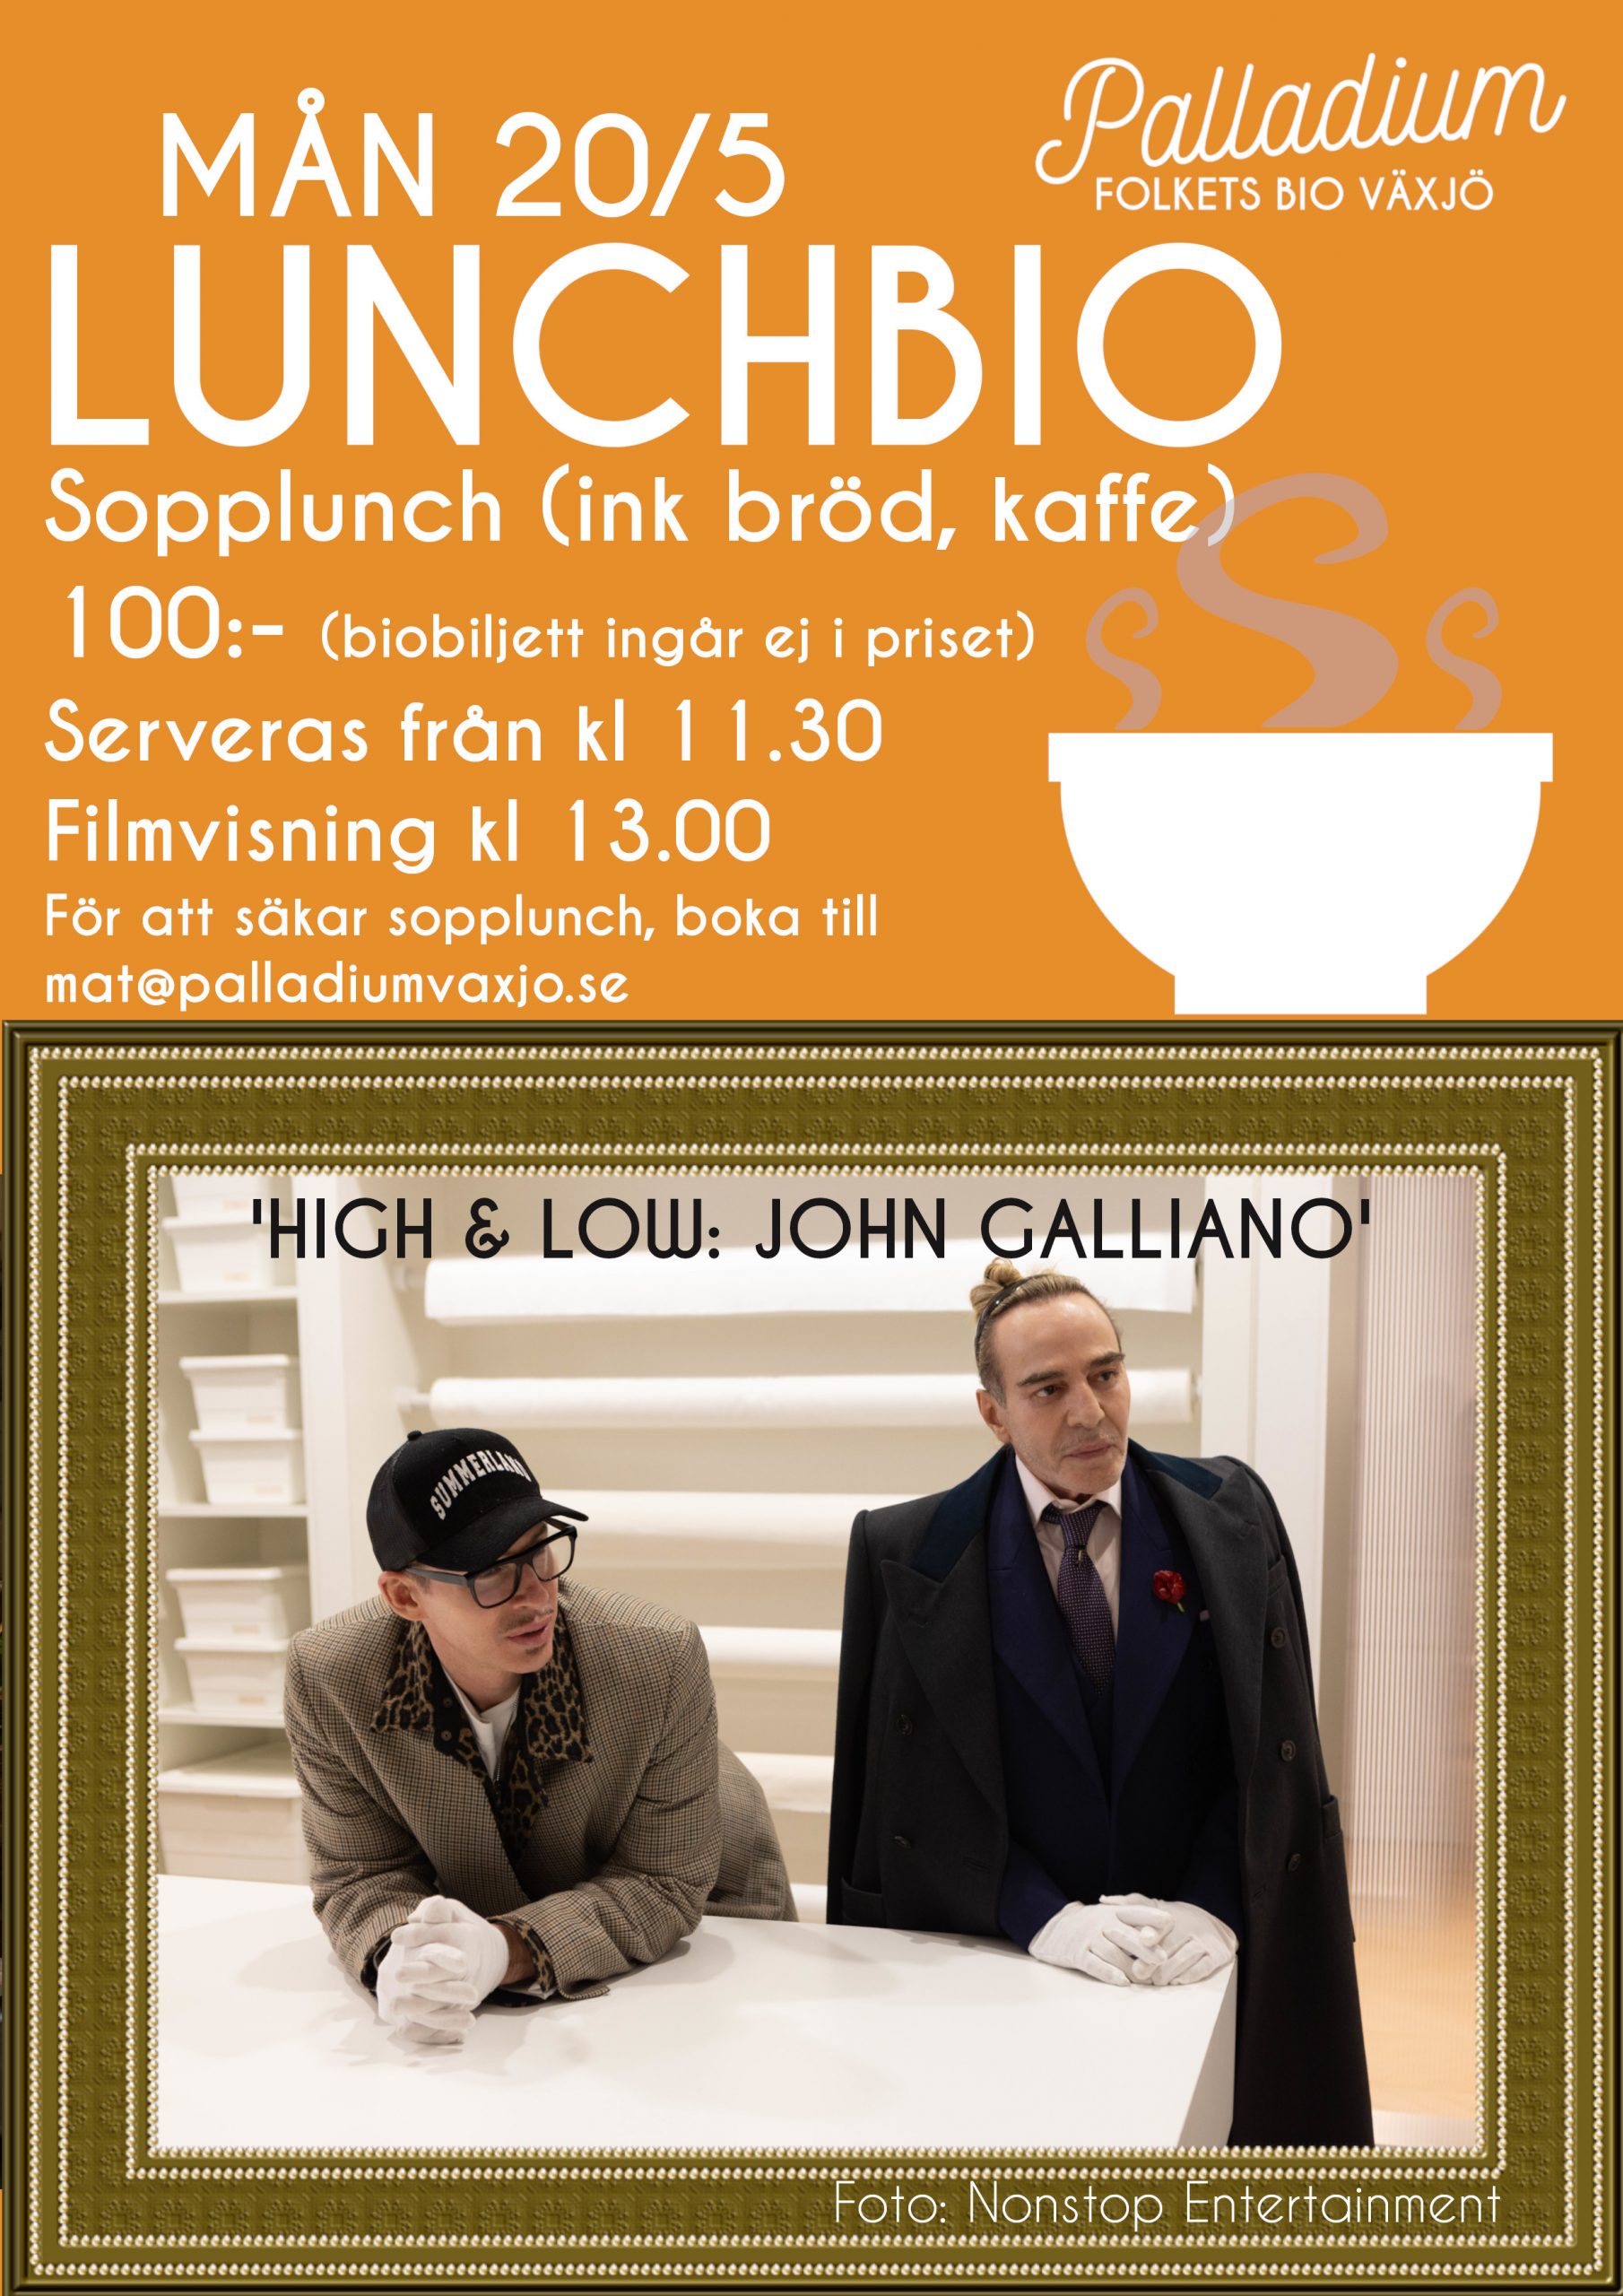 LUNCHBIO – HIGH & LOW: JOHN GALLIANO